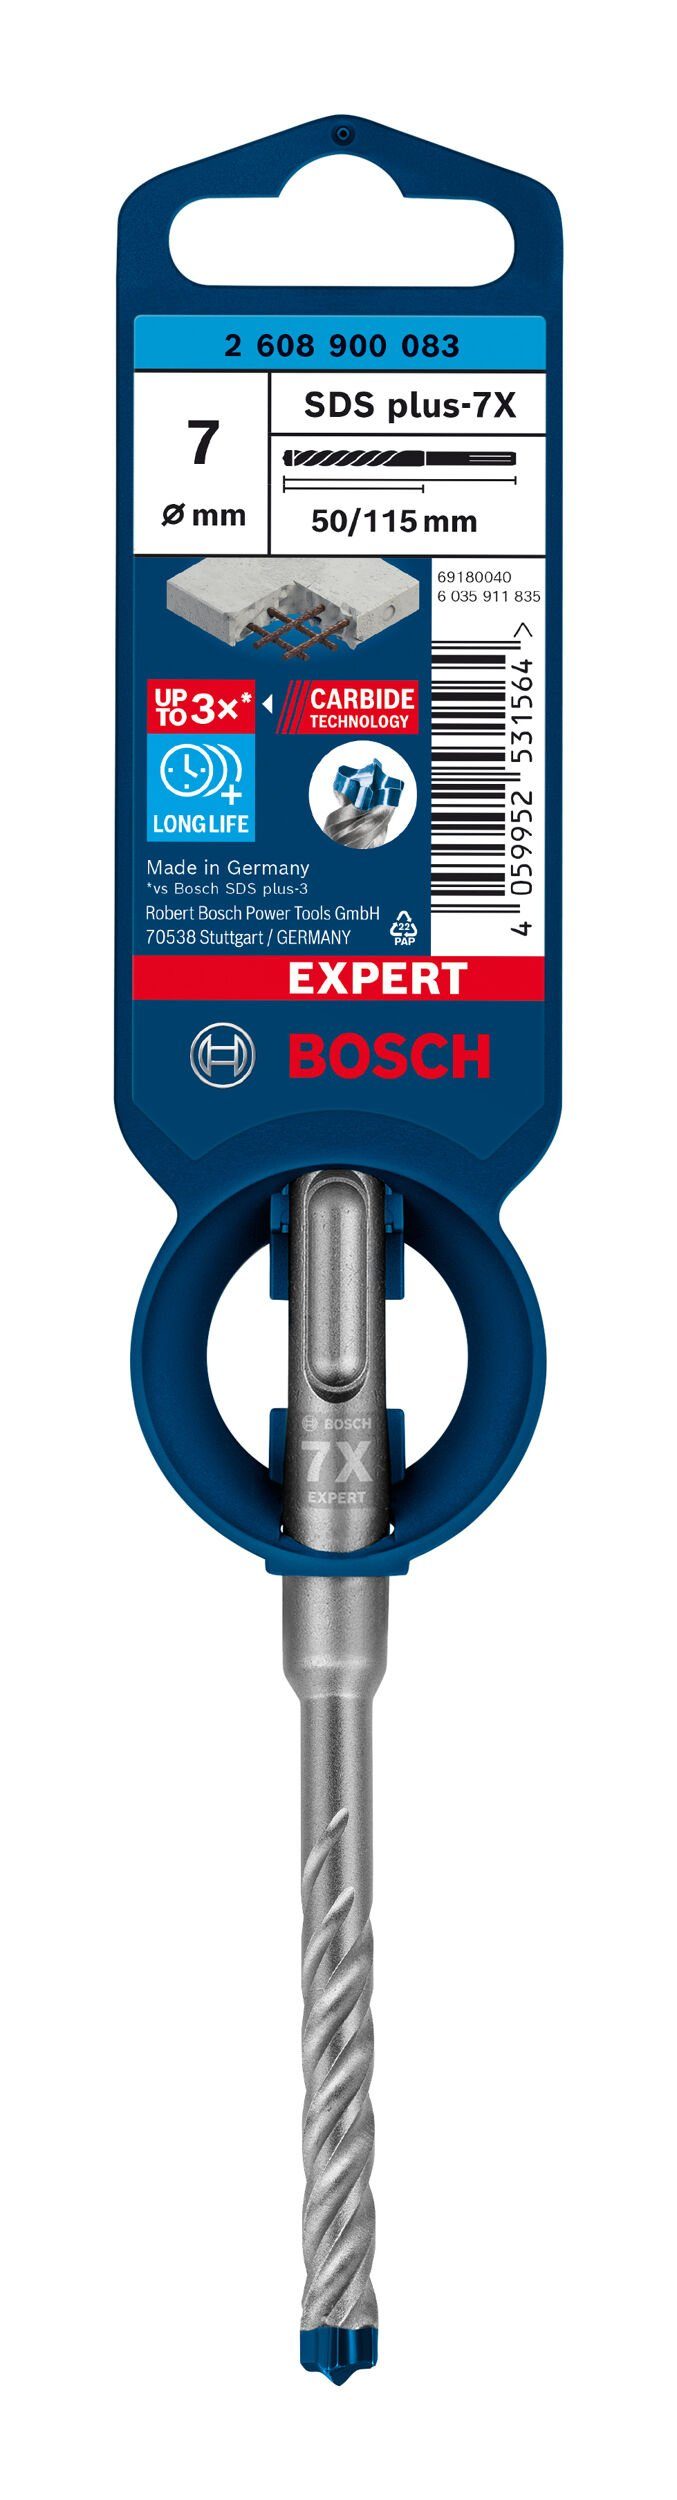 BOSCH Universalbohrer - Hammerbohrer Expert mm - x x 50 SDS 7 115 1er-Pack plus-7X